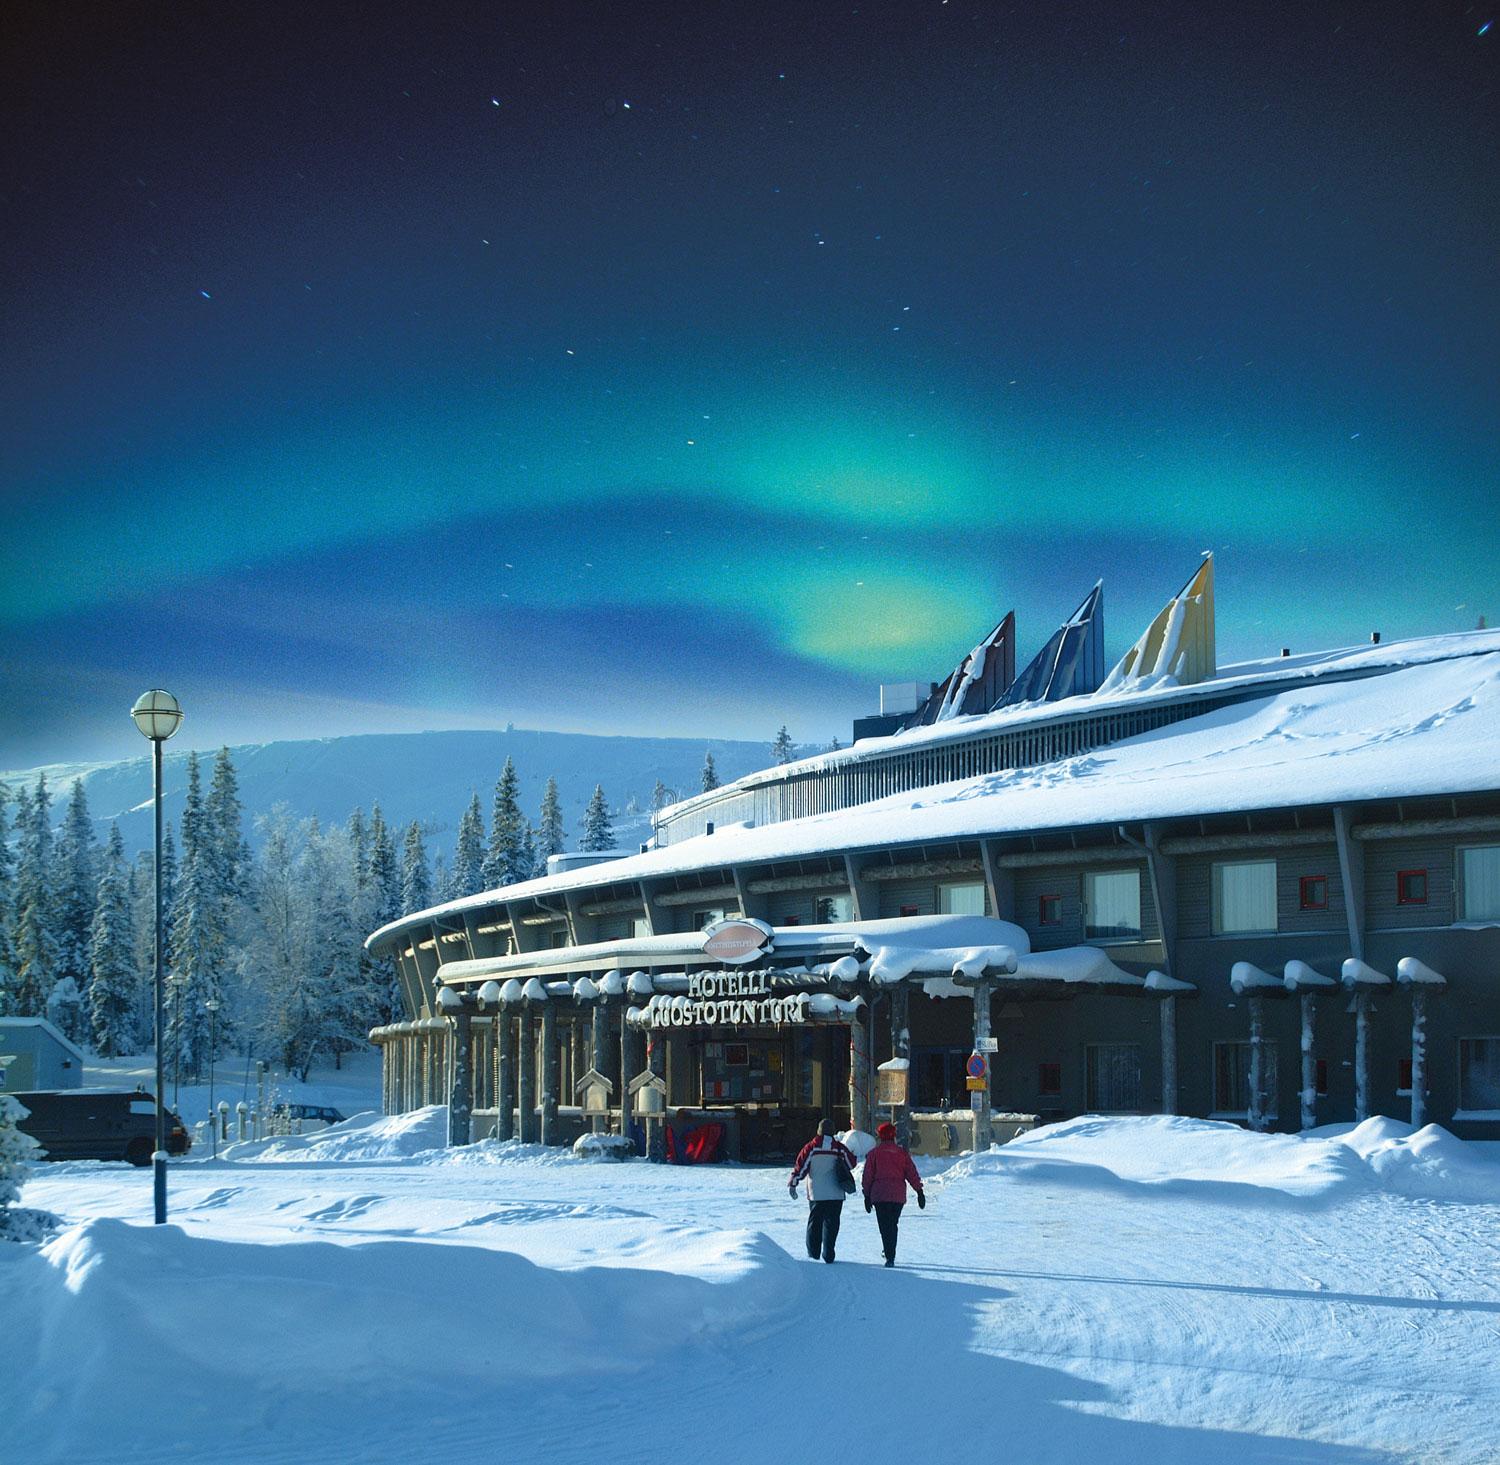 Lapland Hotel Luostotunturi ligger i Sodankylä i Finland och ät oen samisk stugby omgiven av silvertallar. Luosto är ett av de bästa resmålen i världen att beundra norrskenet från.